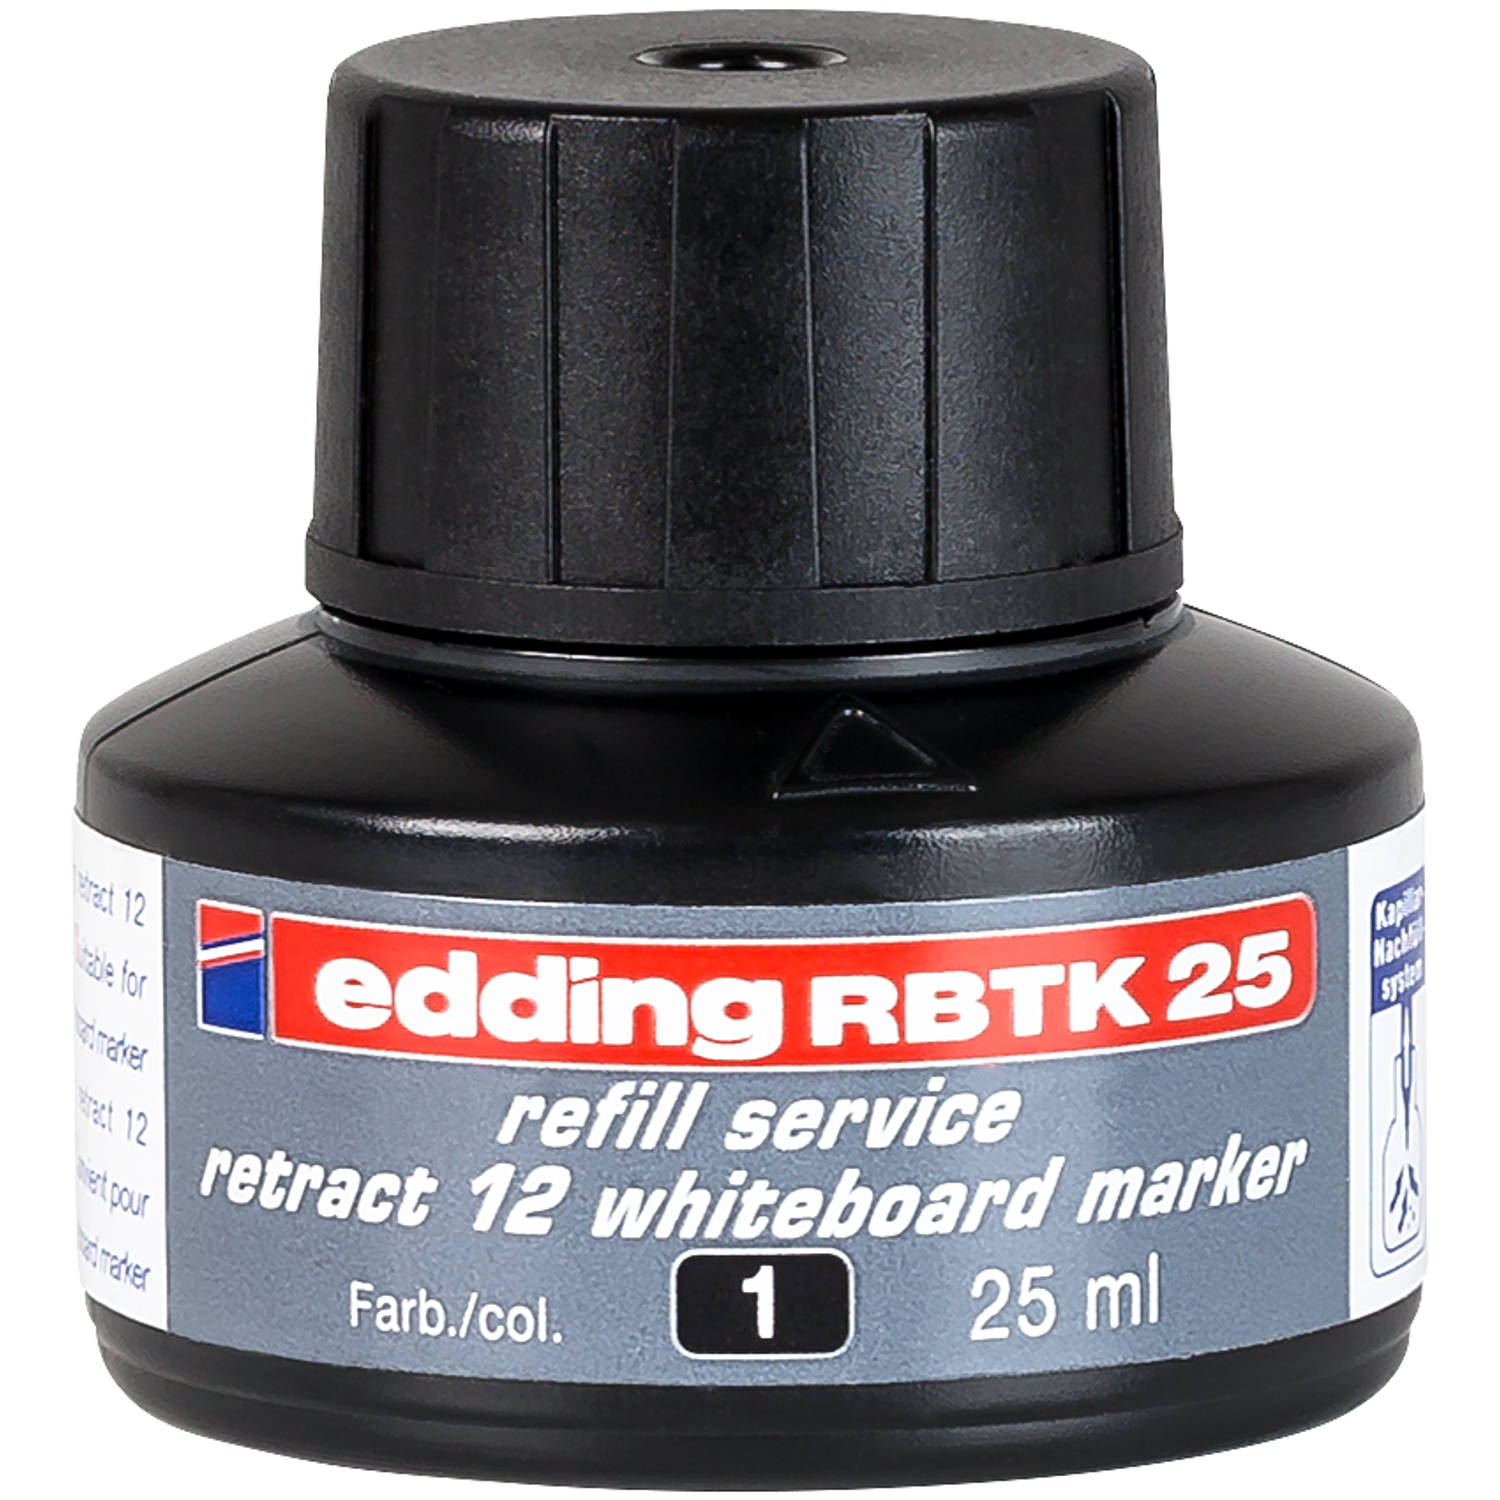 edding RBTK 25 (25 ml) navulinkt voor boardmarkers o.a. e-12 kleur; zwart potje